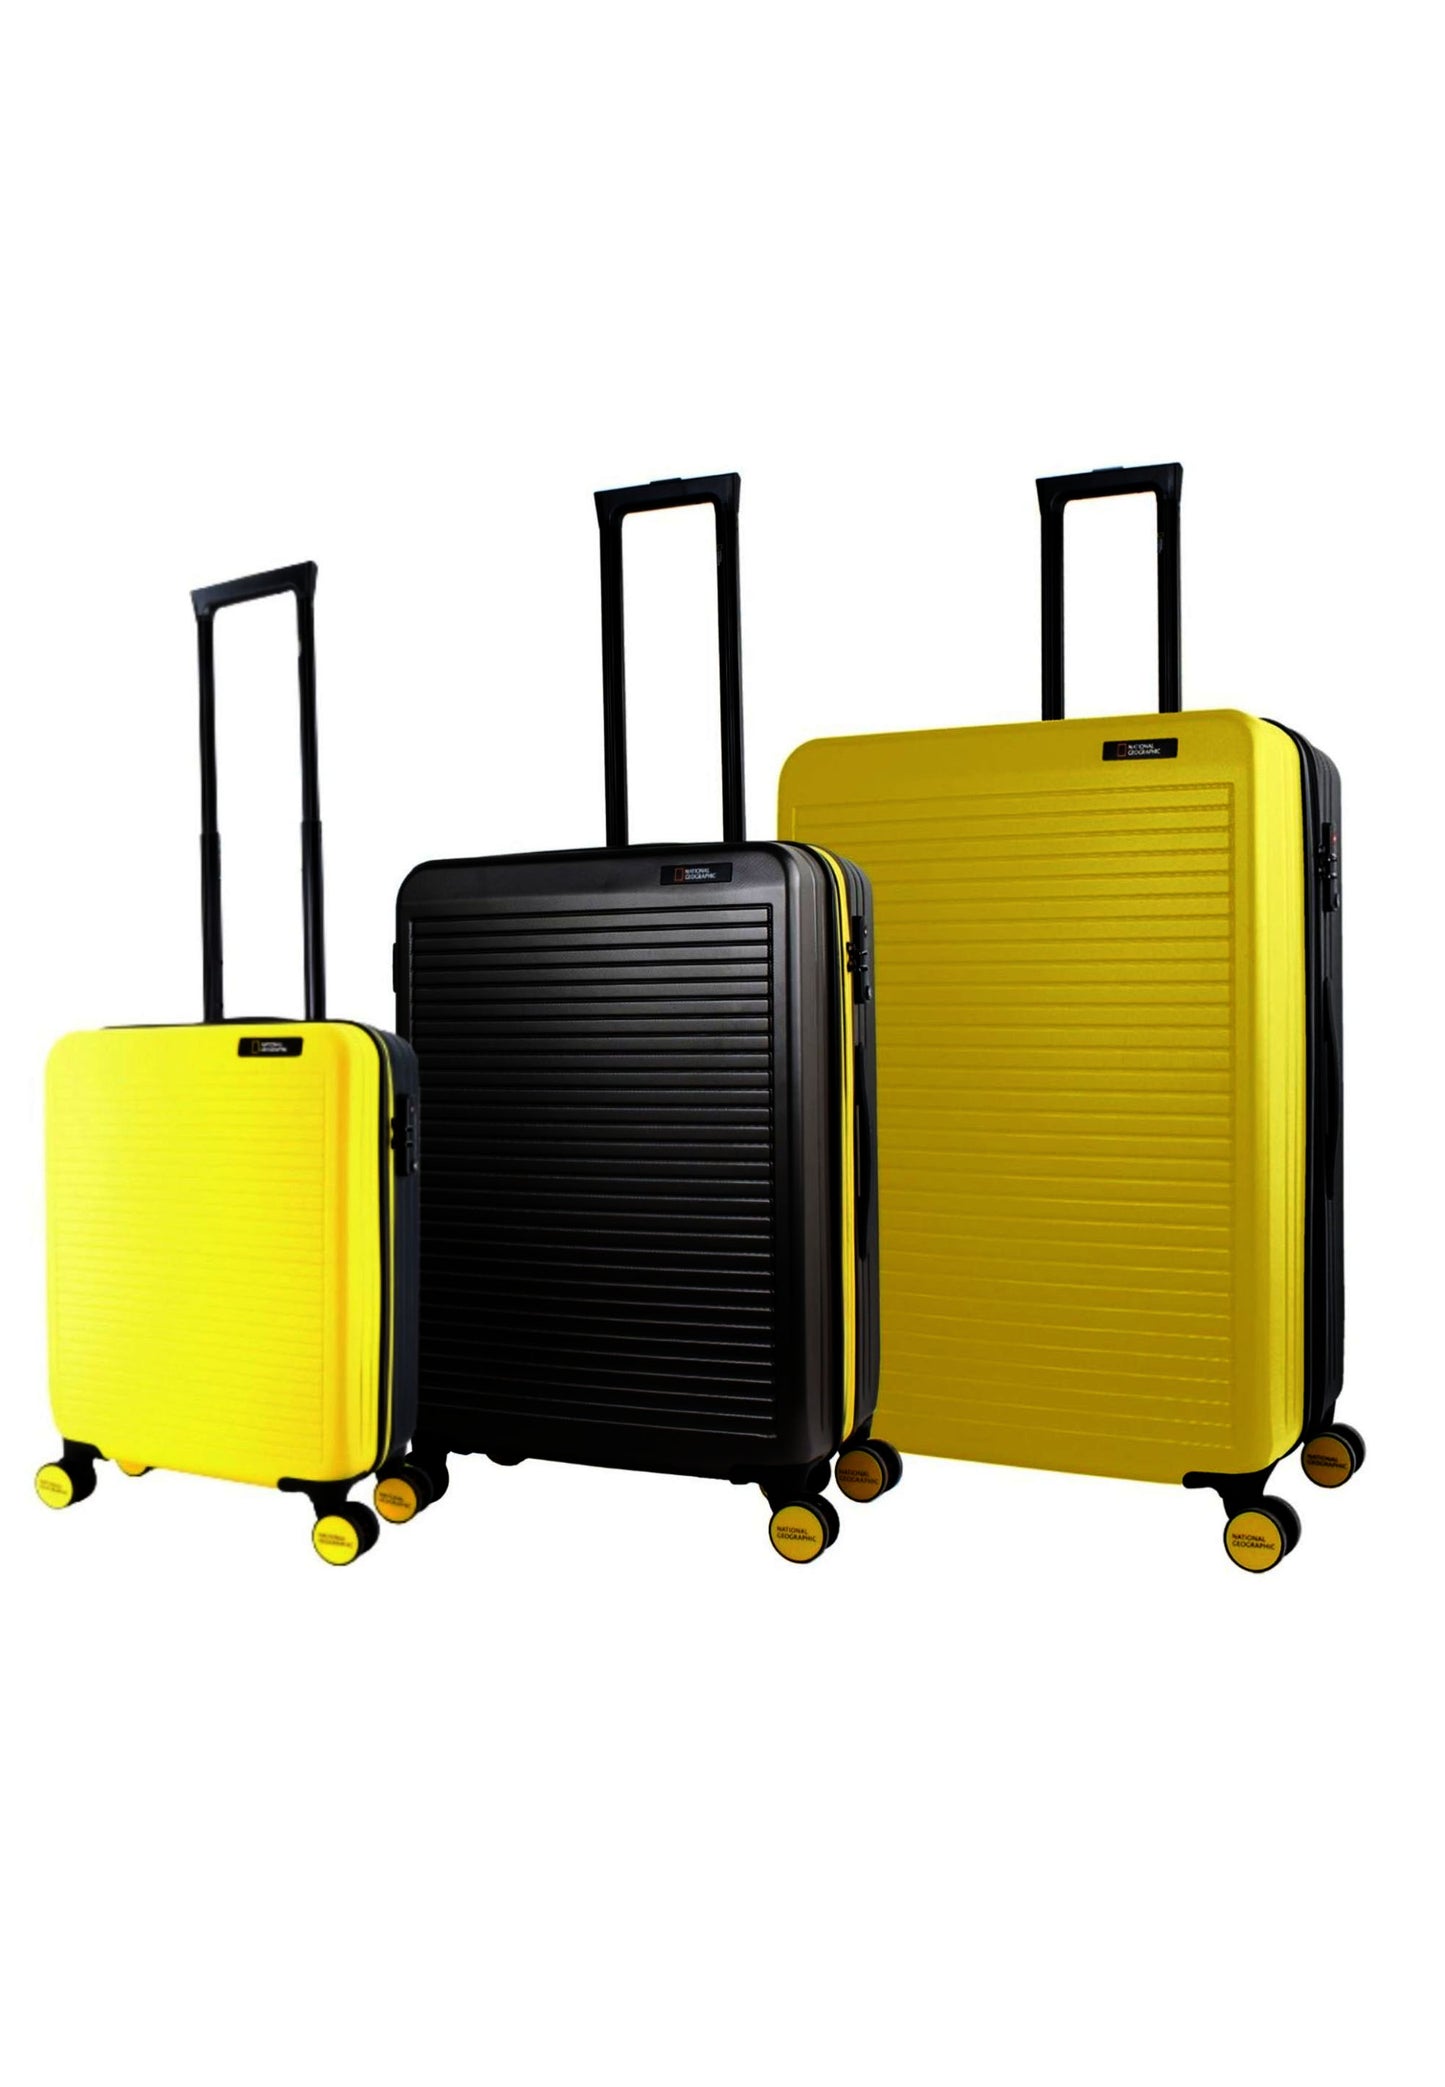 Ensemble de valises rigides 3 pièces National Geographic / ensemble de valises de voyage / ensemble de chariots - Pulse - Jaune/Noir